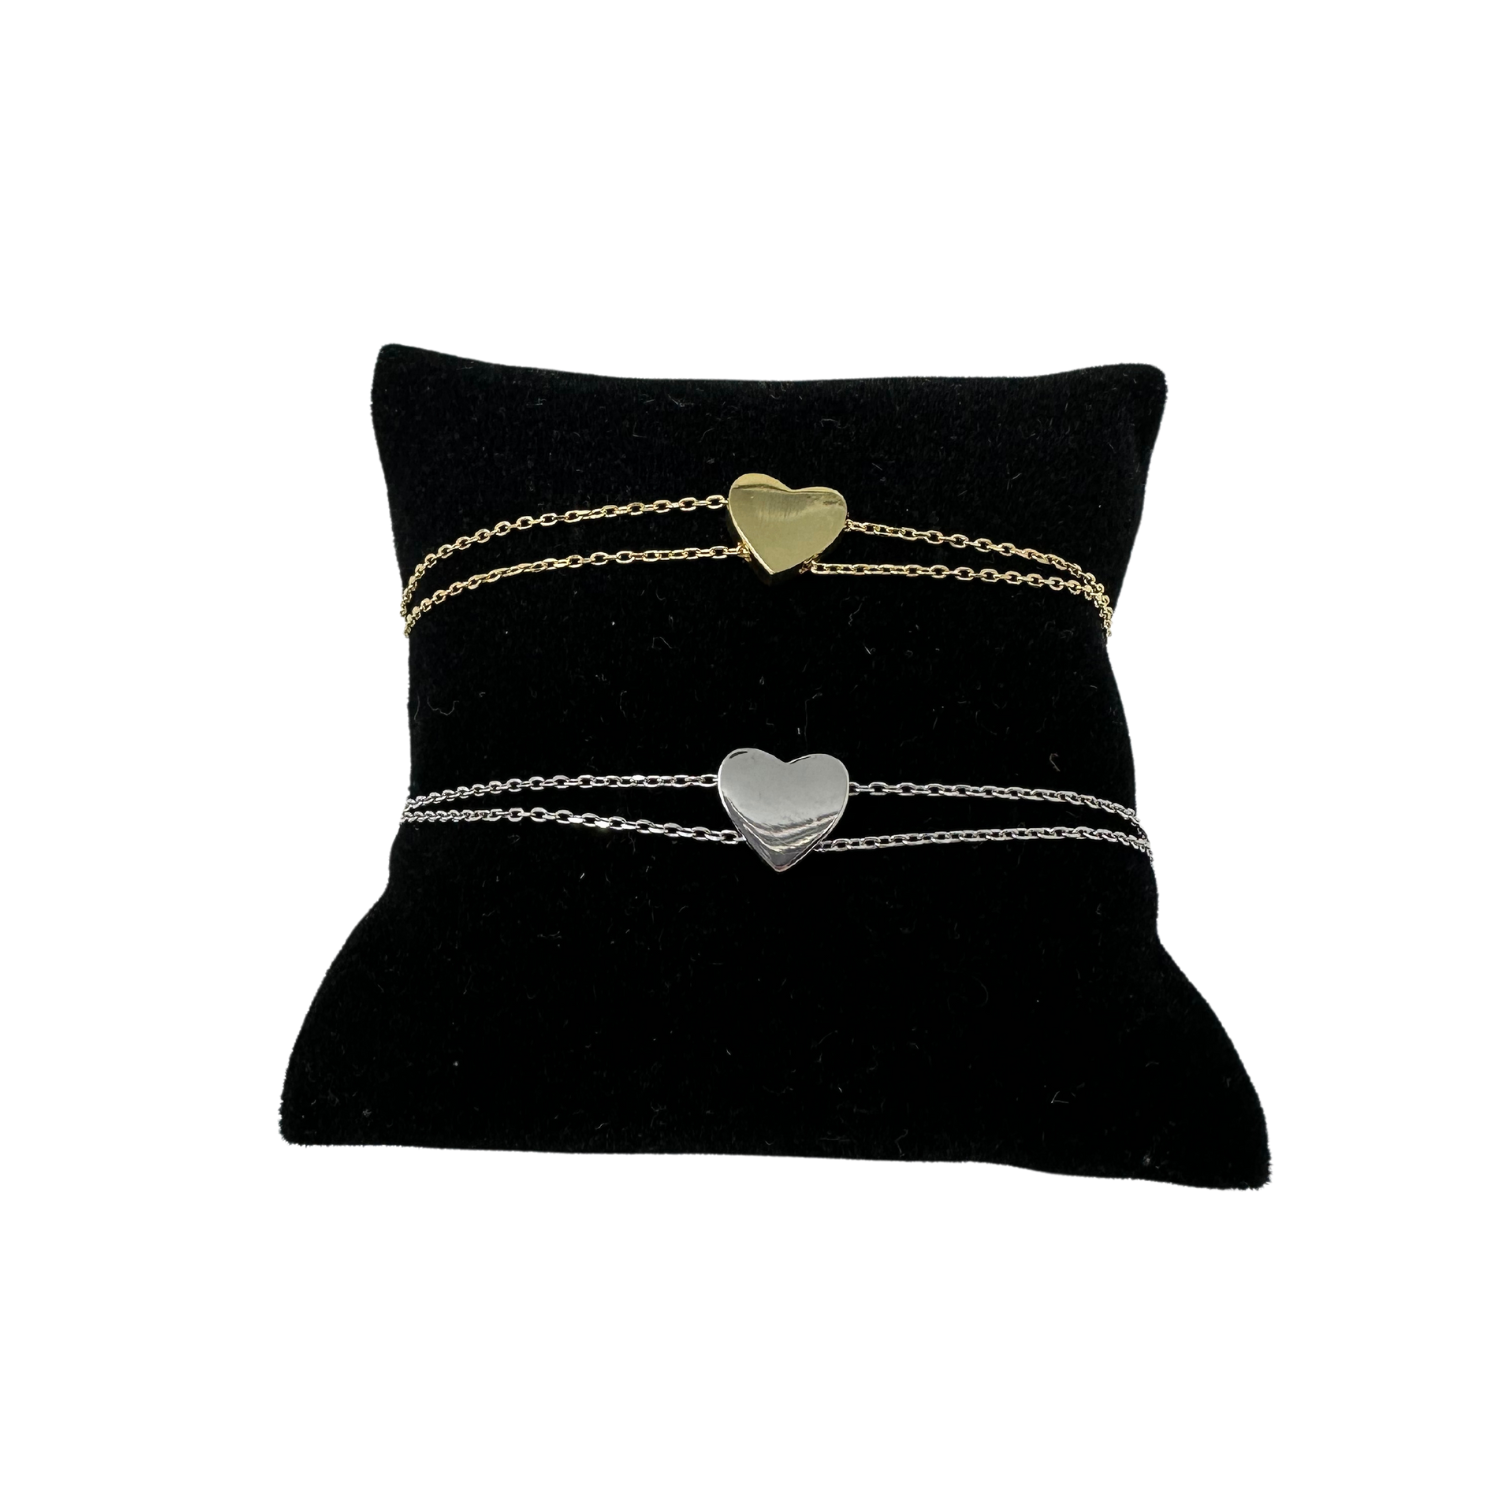 Heart 2 Chain Bracelet - Silver